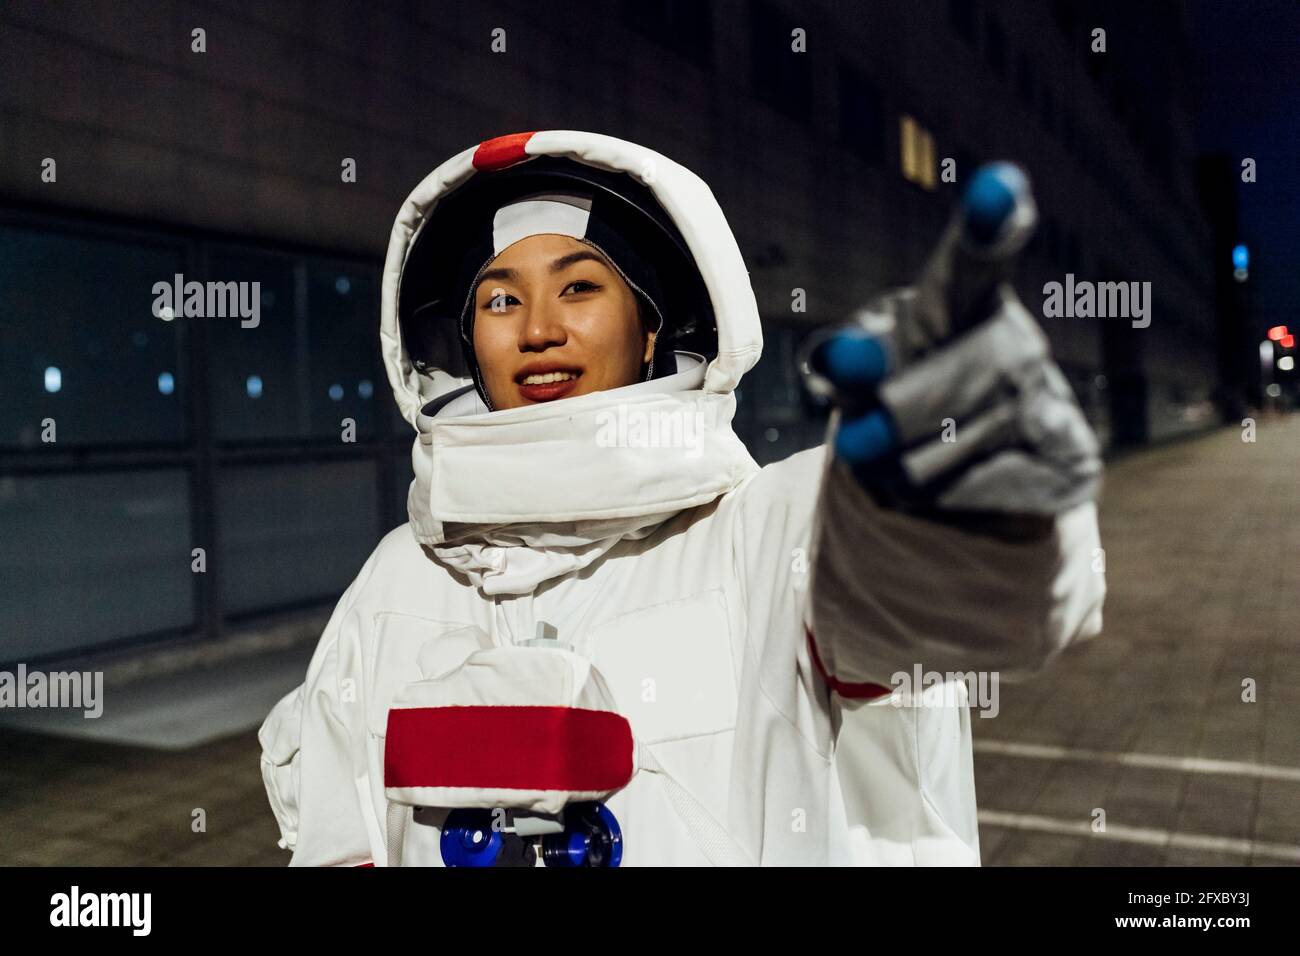 Lächelnde Astronautin im Raumanzug, die nachts auf den Fußweg zeigt Stockfoto